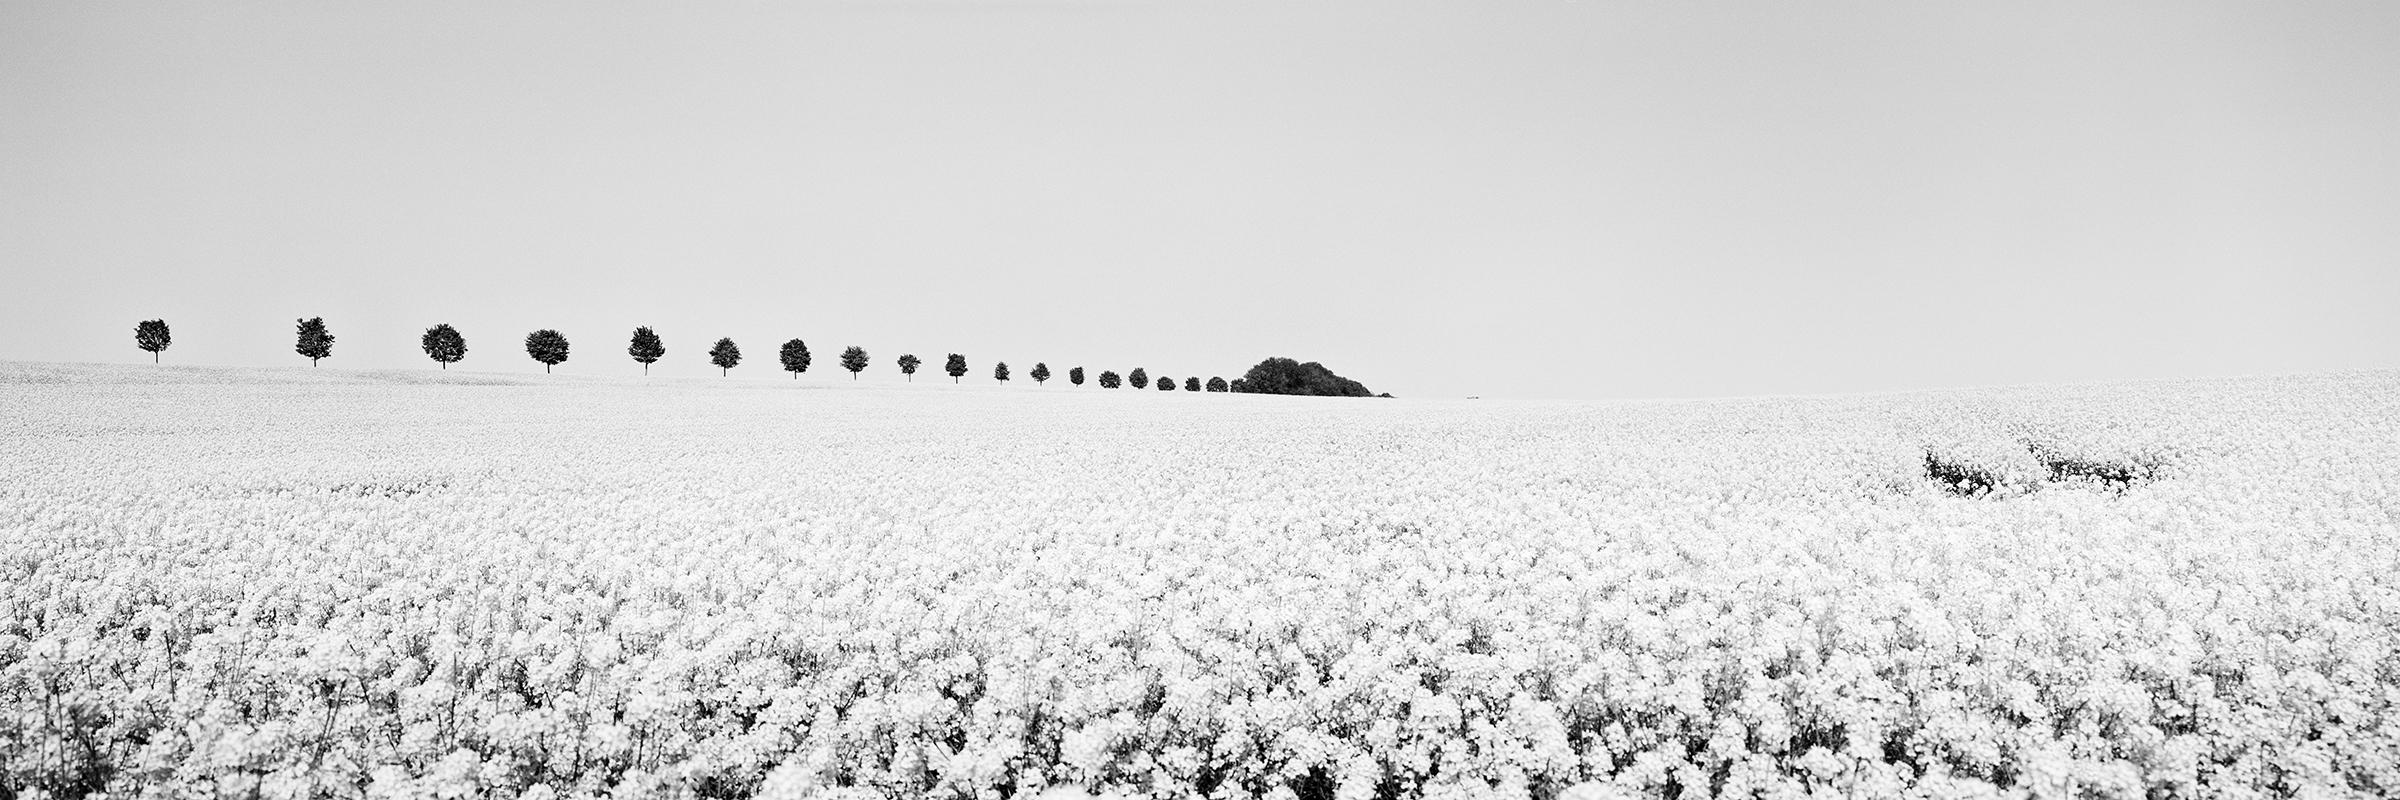 Landscape Photograph Gerald Berghammer - Brassica, panorama Napus, rangée d'arbres, France, photographie de paysage en noir et blanc